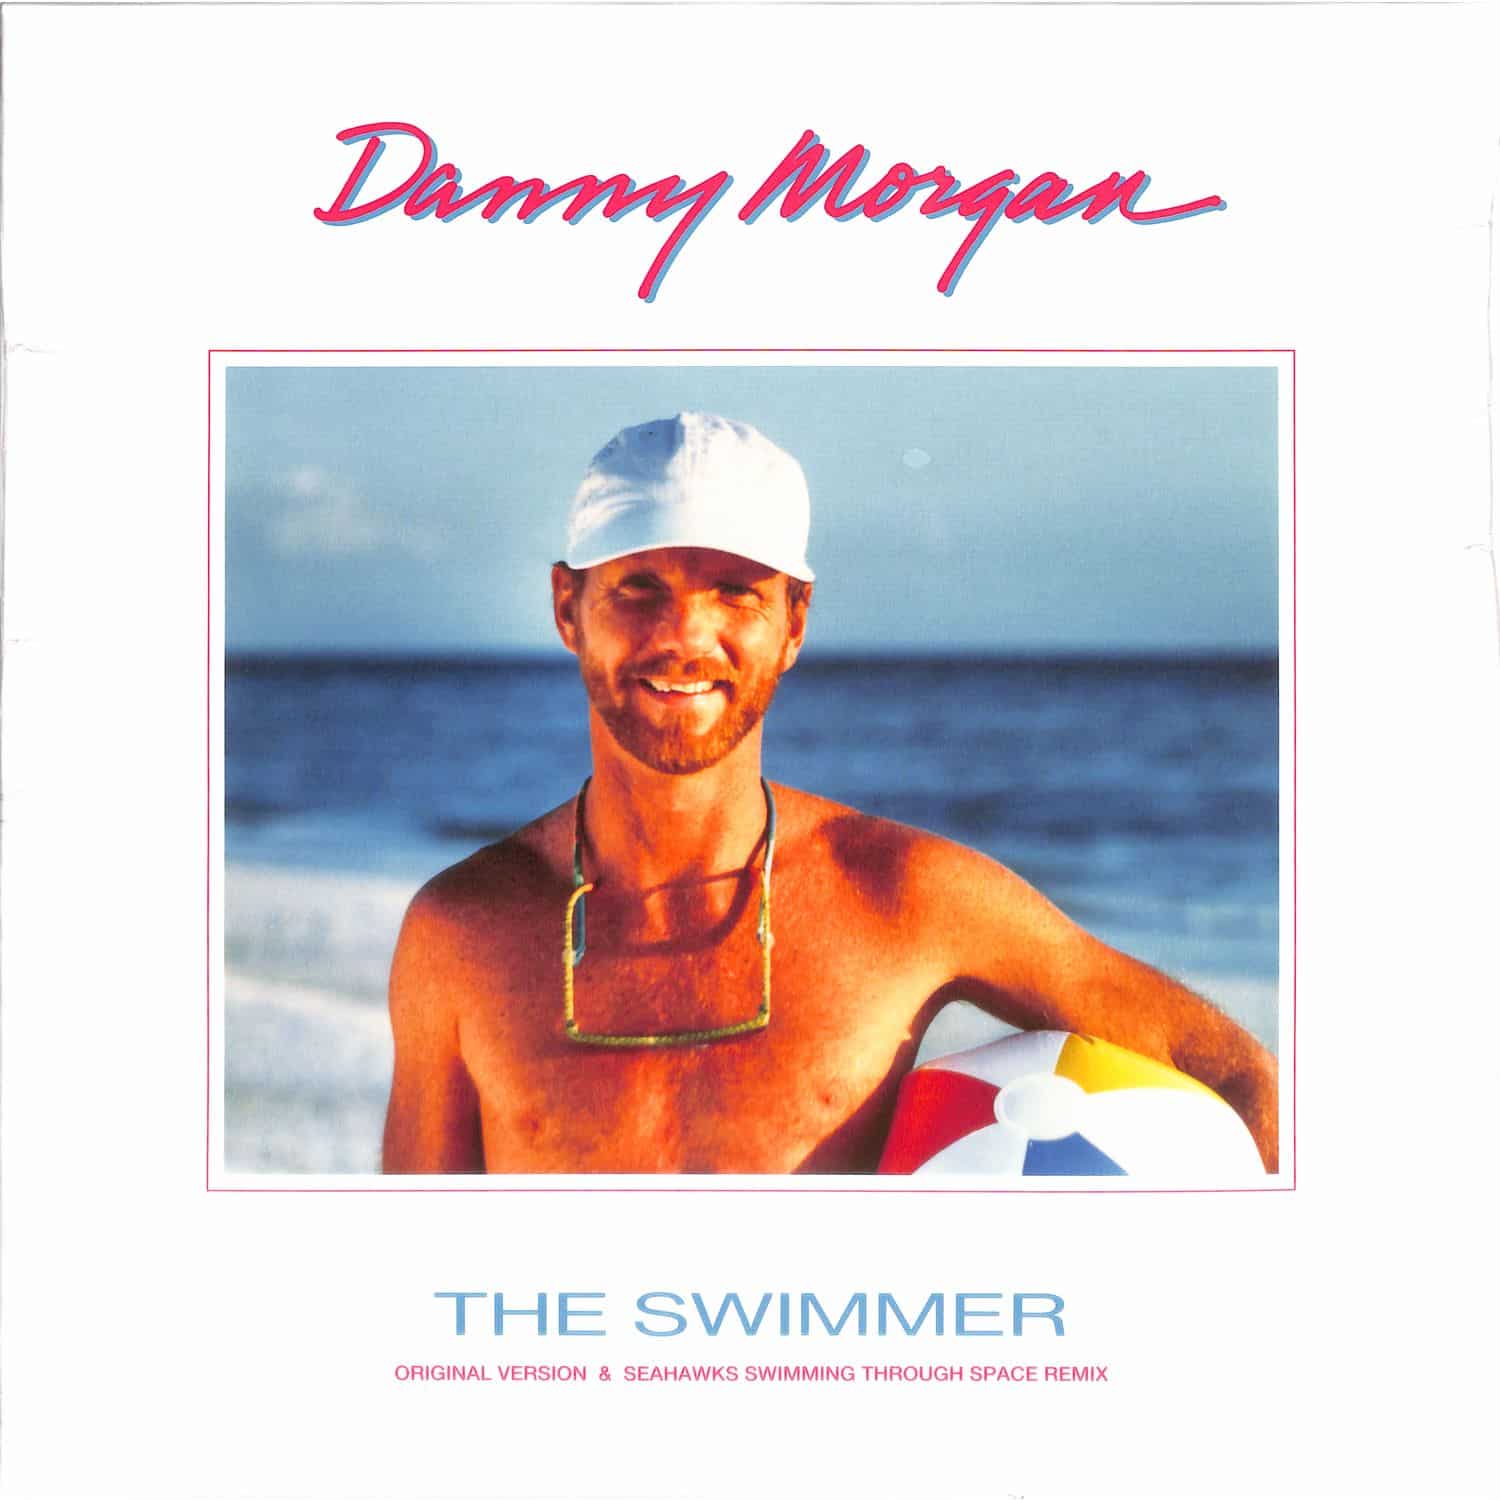 Danny Morgan - THE SWIMMER 